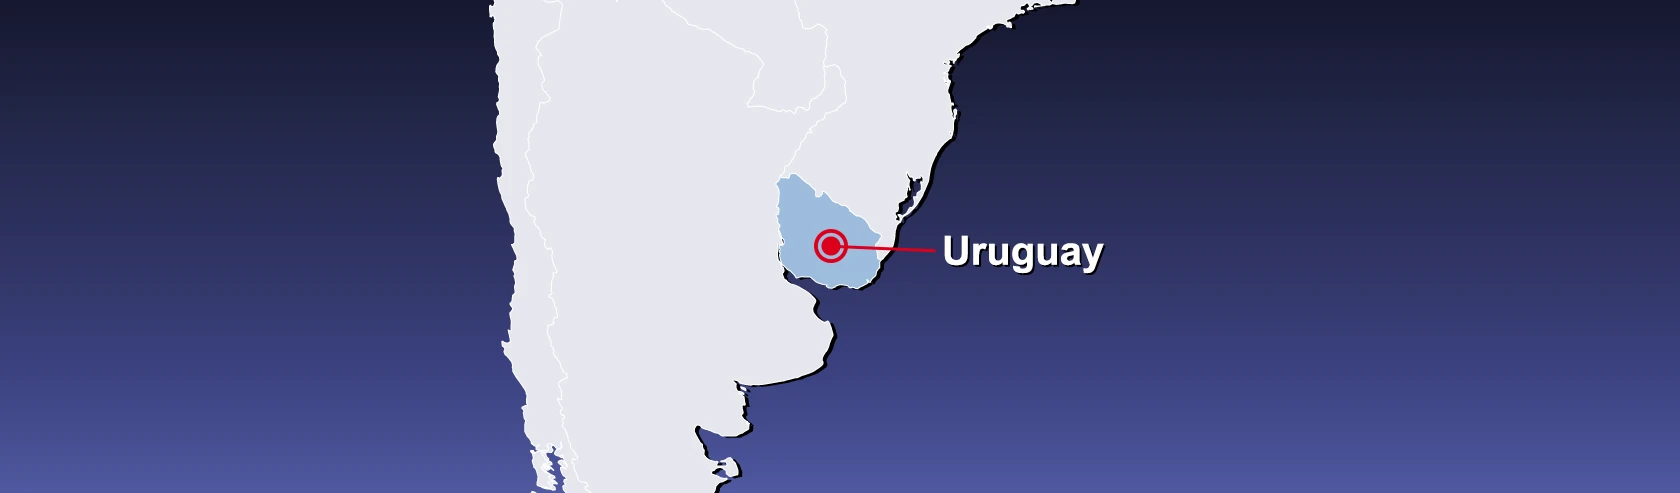 Transport-Uruguay